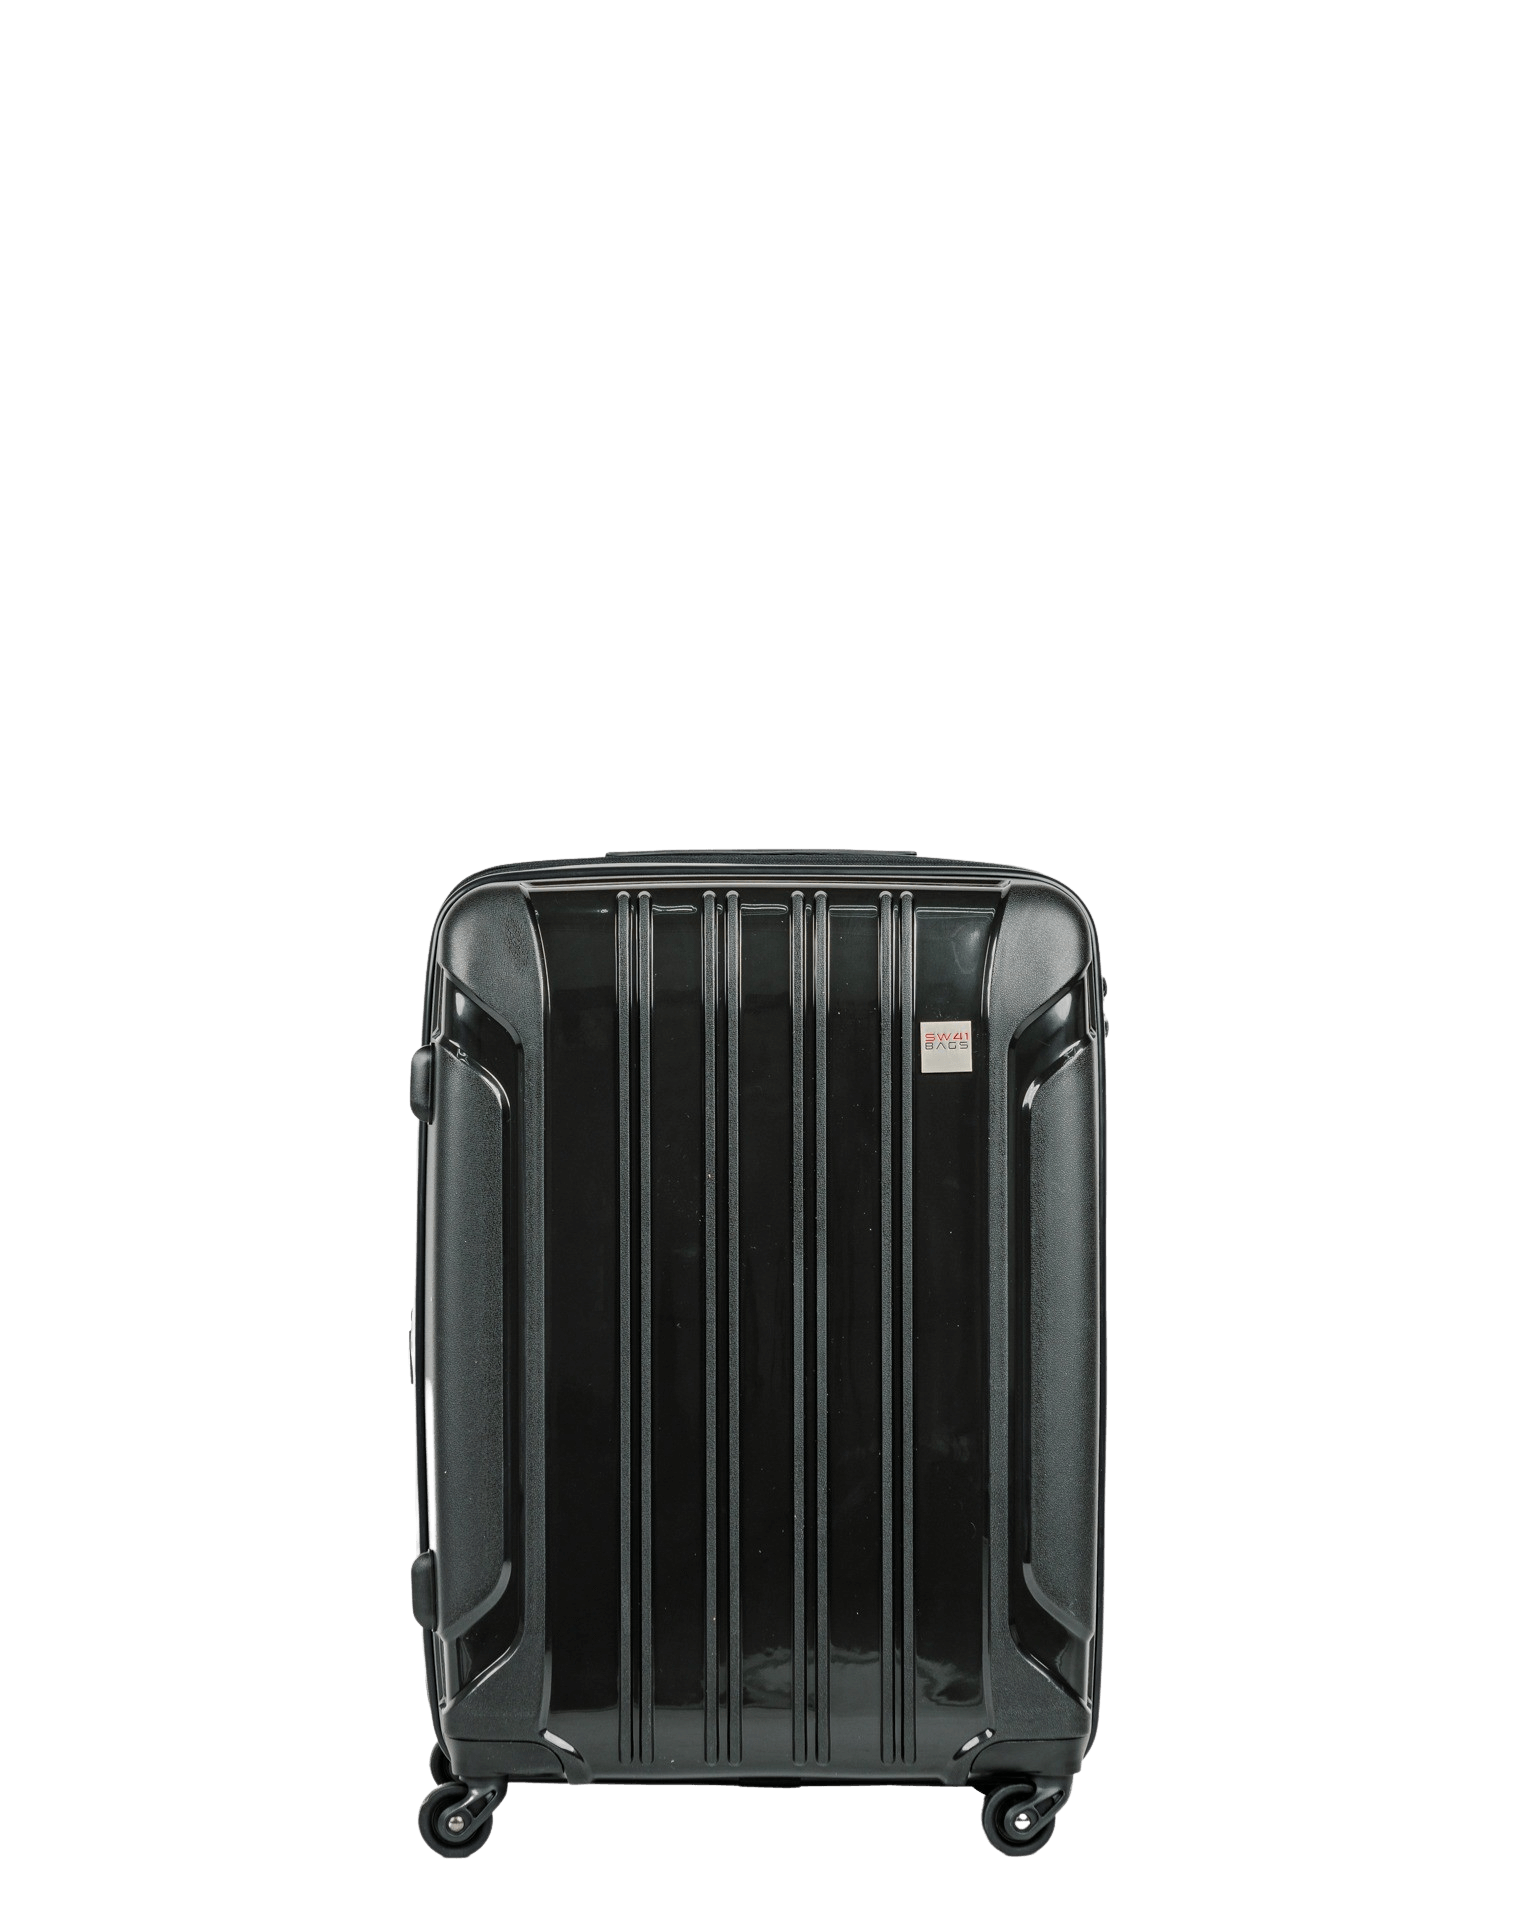 Tourist - Grösse M erweiterbar 65cm - Swissbags: Travel Bags, Luggage,  Accessories - Vouvry, Switzerland - Travel Bags, Luggage, Accessories -  Vouvry, Switzerland